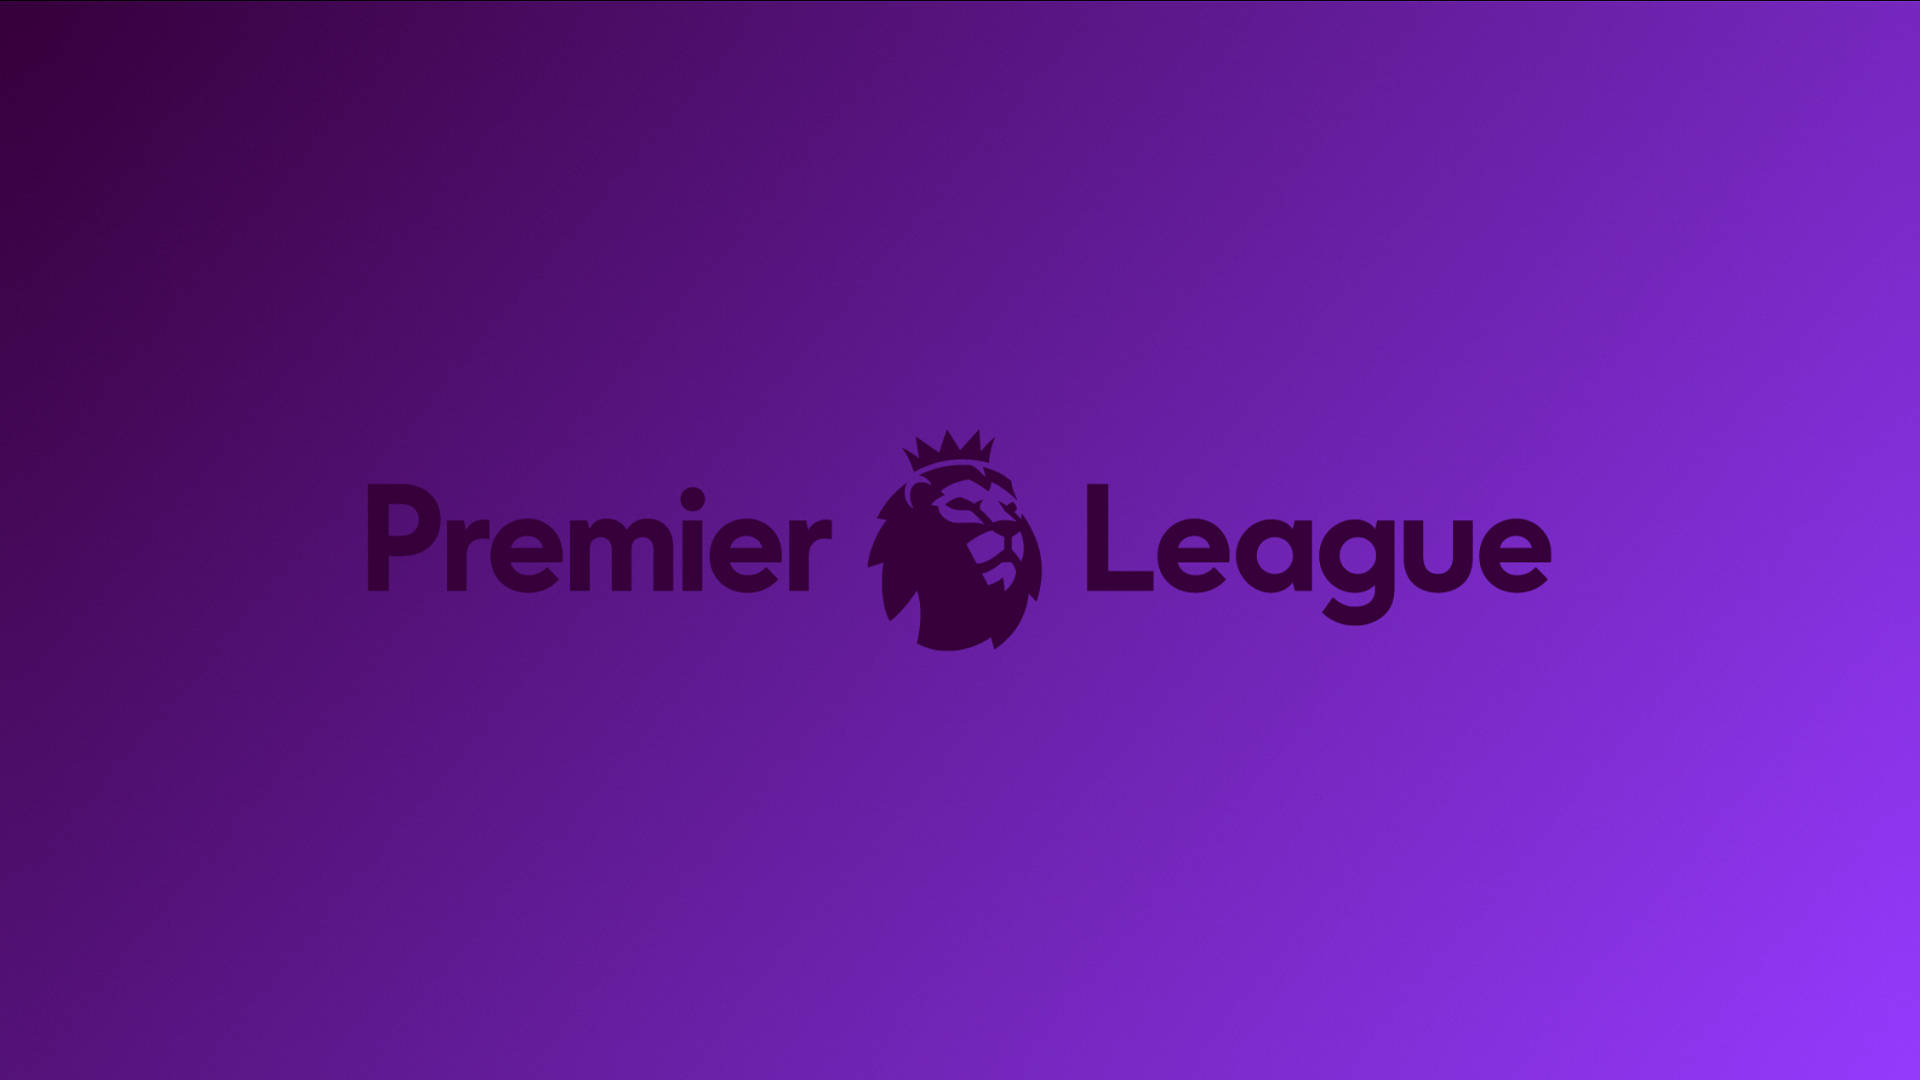 Premier League In Purple Wallpaper